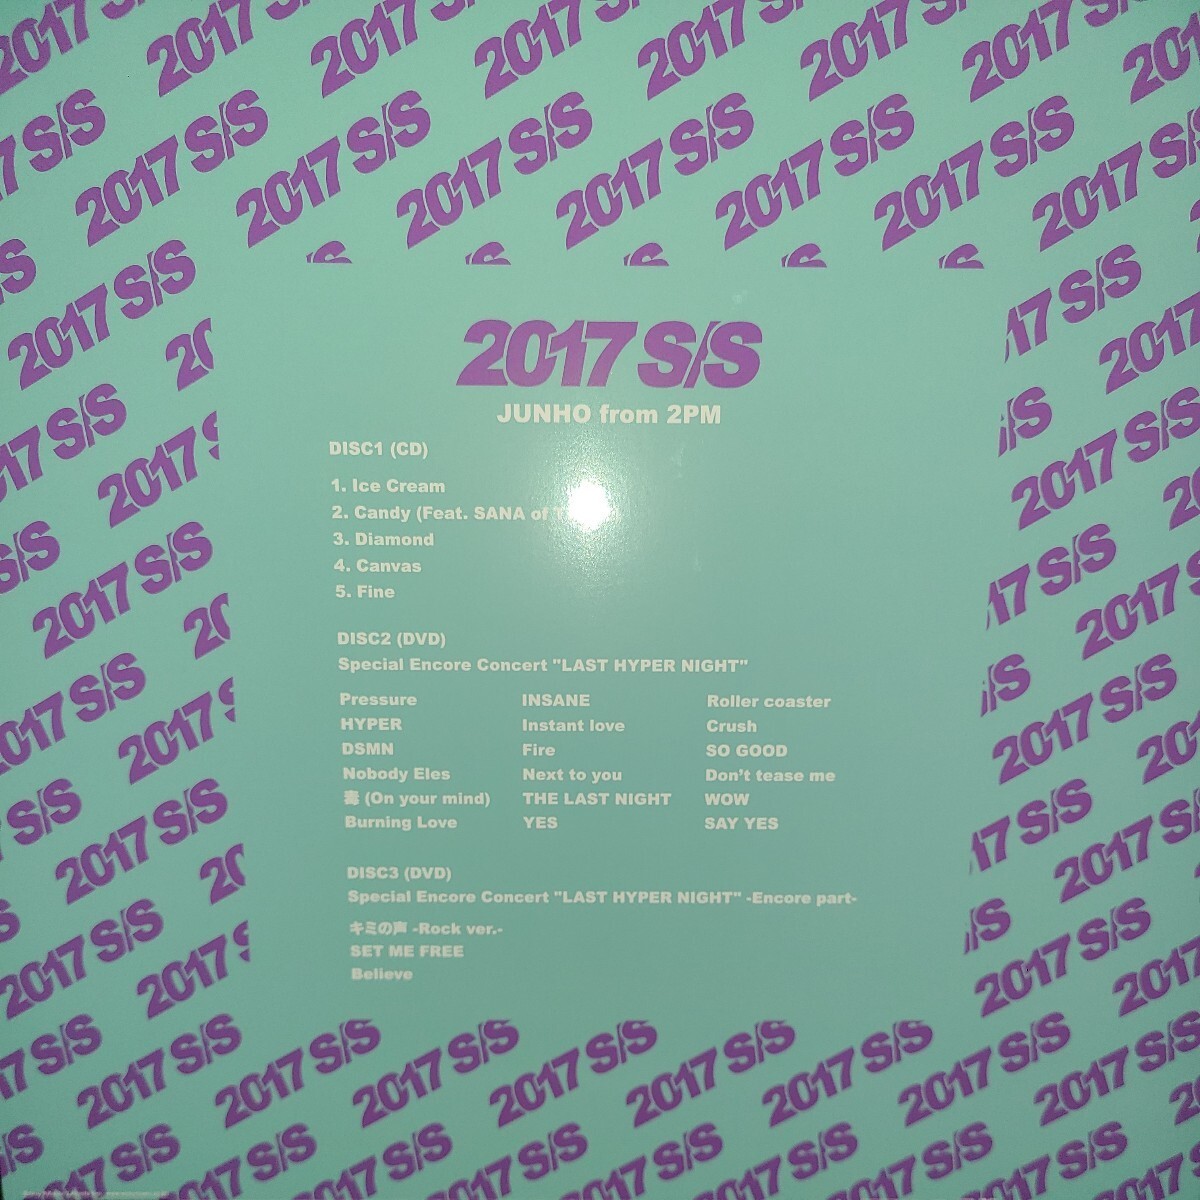 【美品】韓流 2PM JUNHO ジュノ S/S 2017 完全生産限定盤 LPサイズ盤 CD DVD リパッケージ LP SS LIVE 映像 ESCL4922-4の画像4